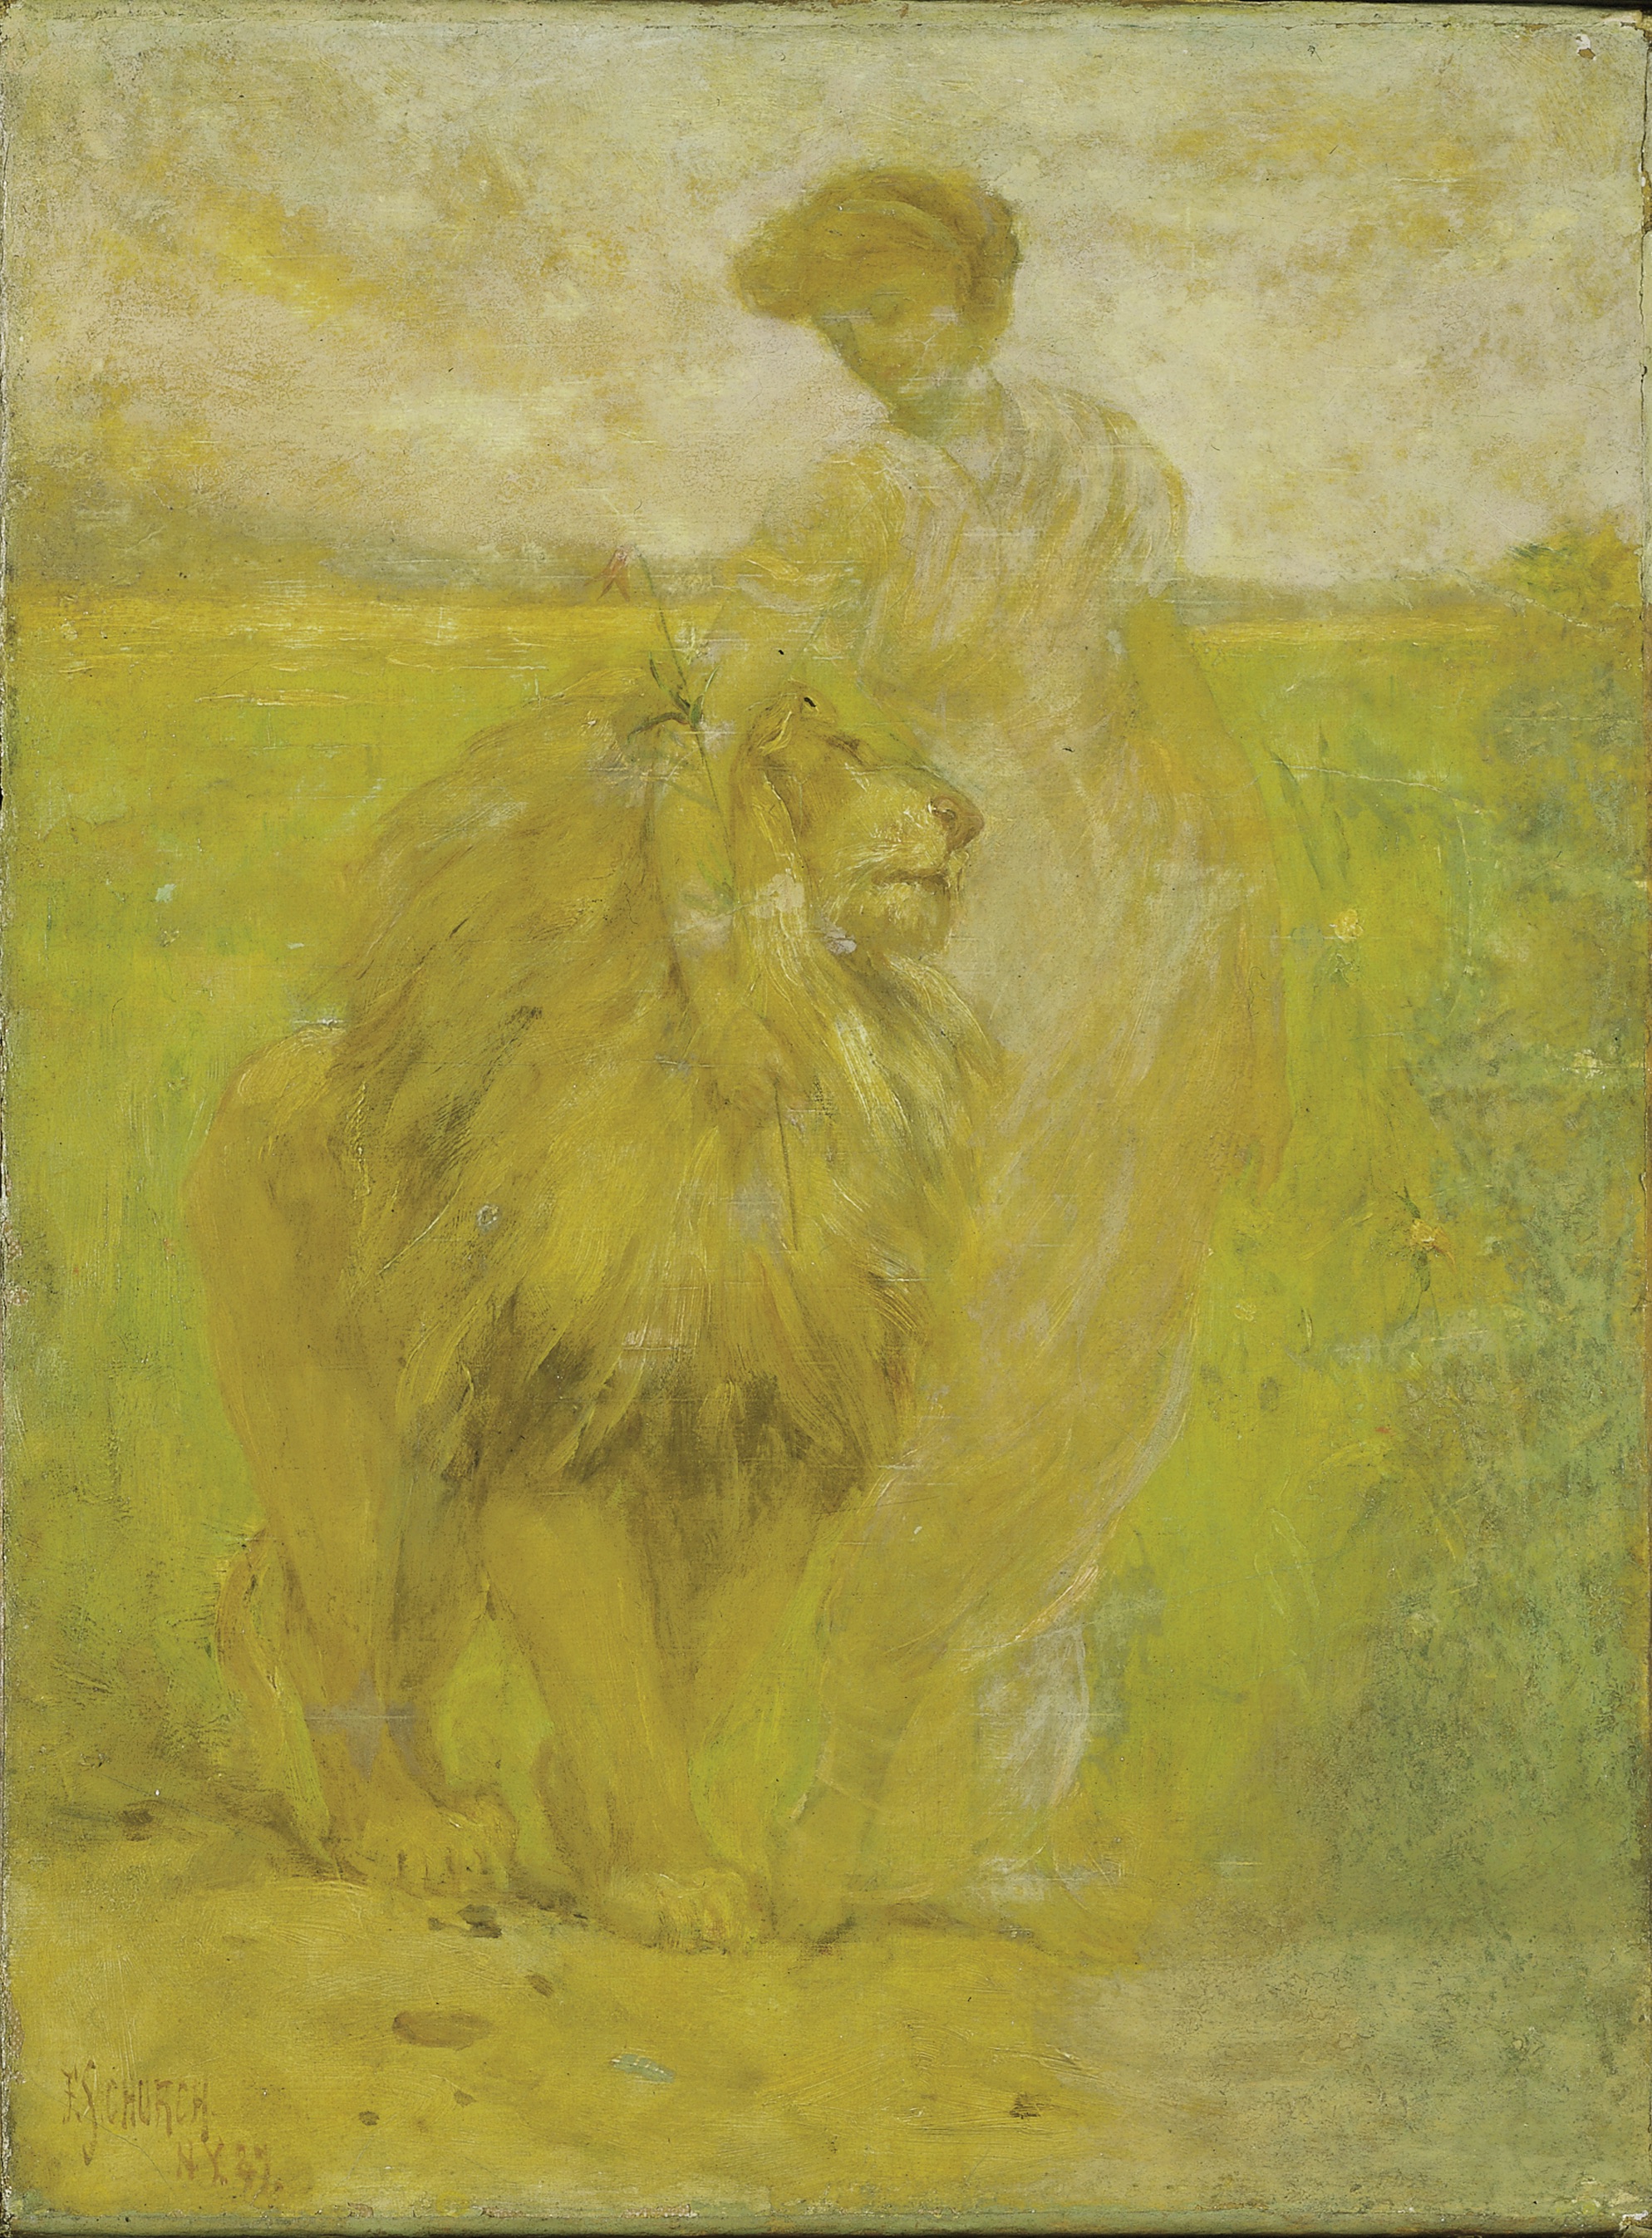 Превосходство by Frederick Stuart Church - 1887 - 40.9 x 30.4 cm 